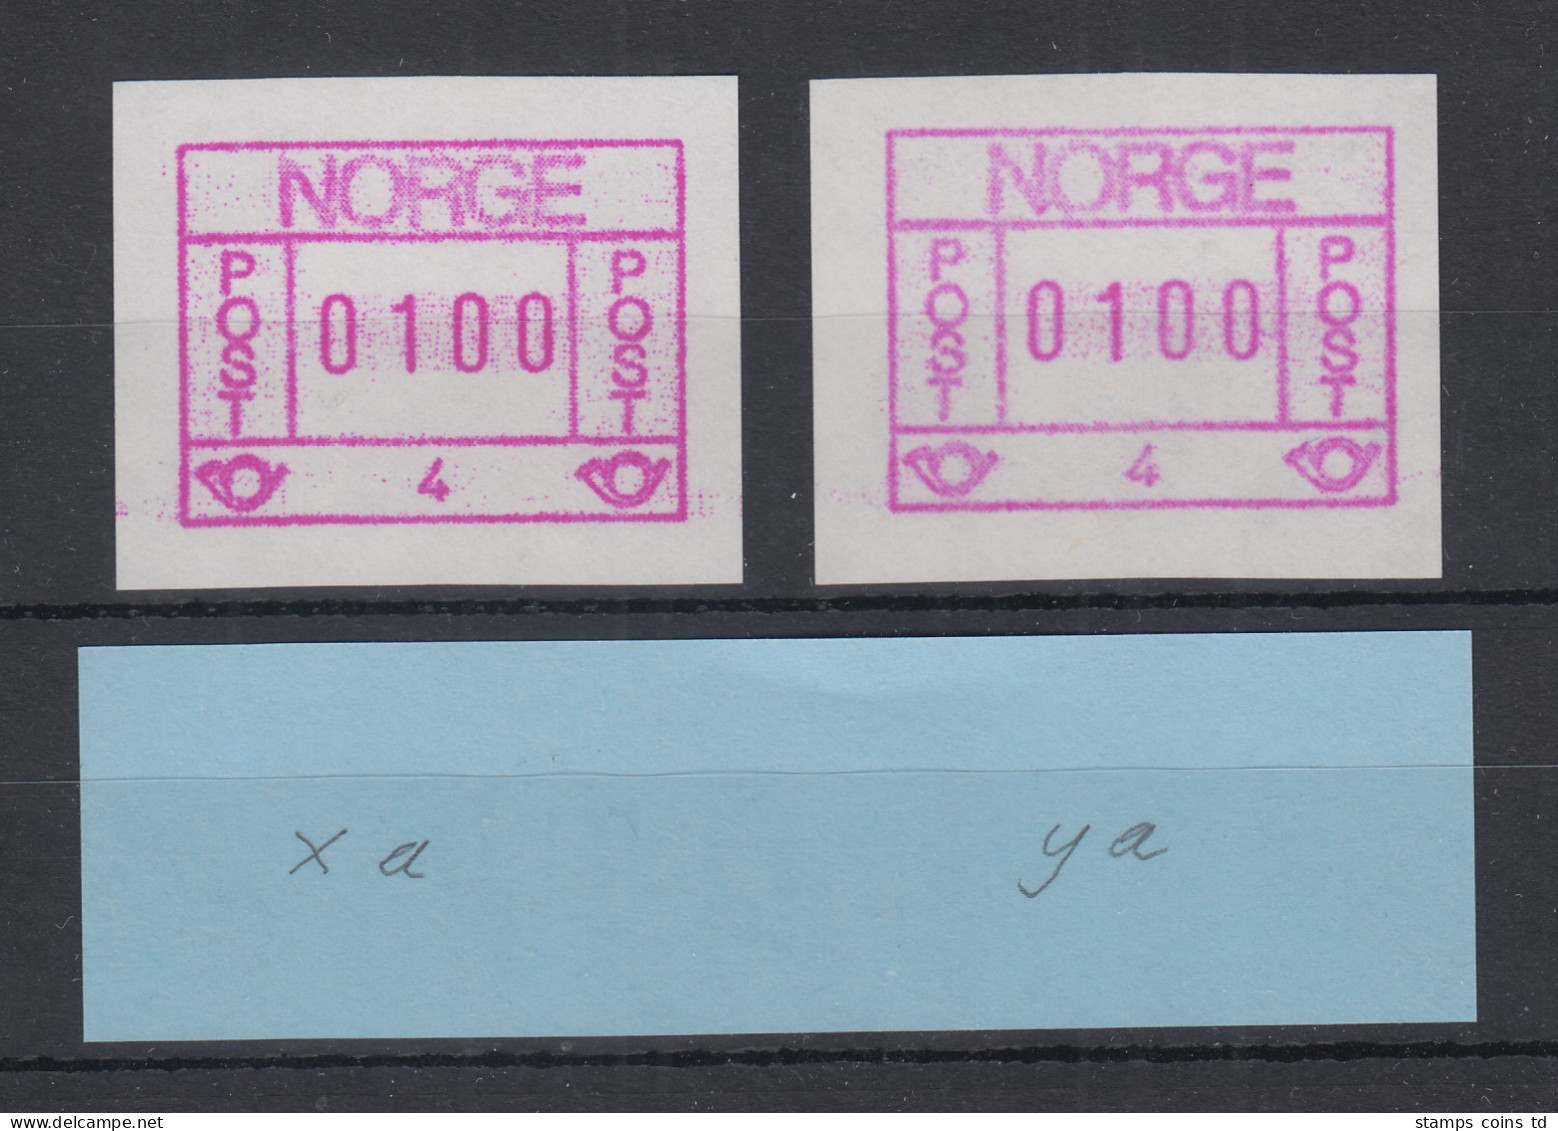 Norwegen / Norge Frama-ATM 1978 Aut.-Nr. 4 Dunkles / Helles Papier ** - Machine Labels [ATM]